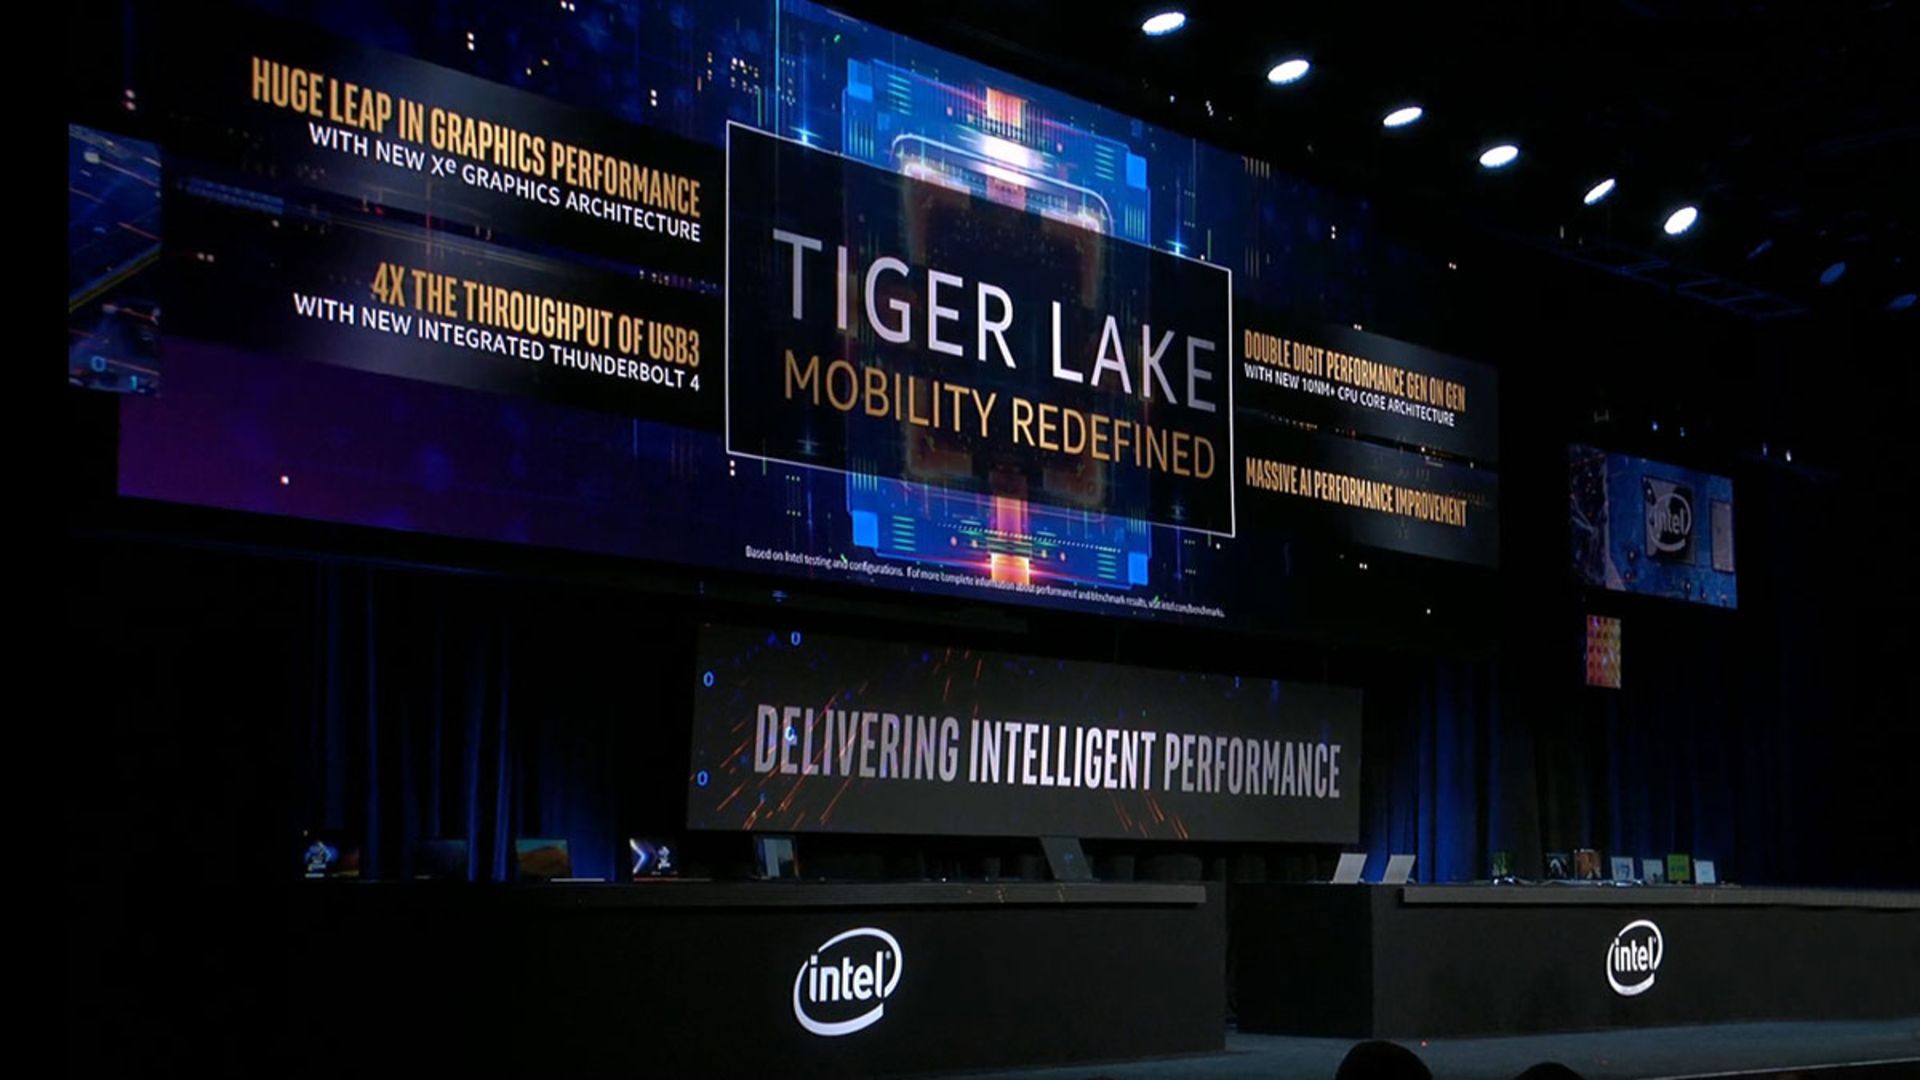 اینتل تایگر لیک / Intel Tiger Lake